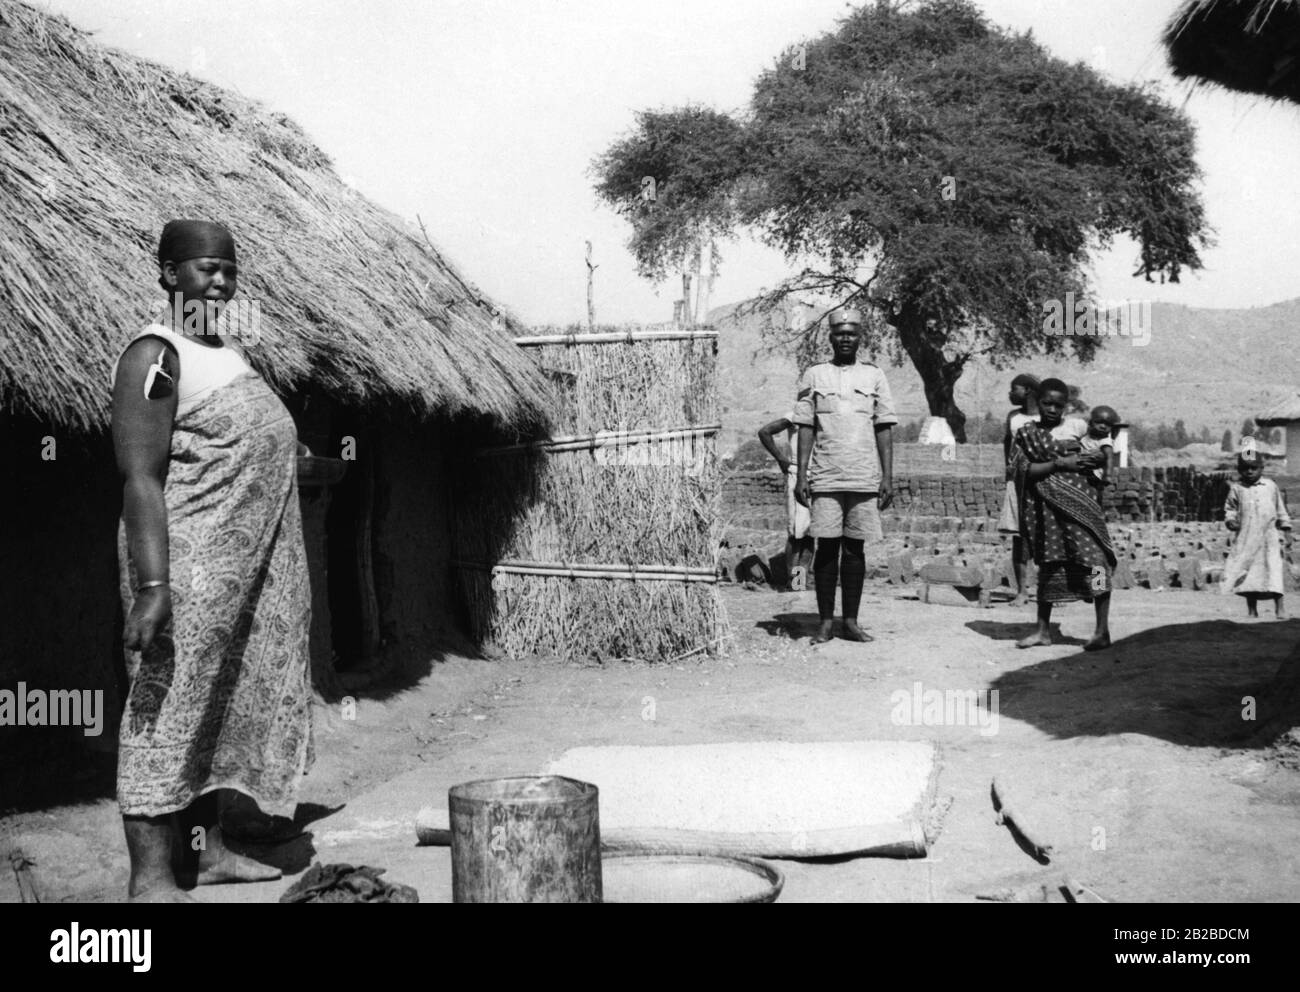 Camp d'Askari dans le territoire de Tanganyika en Afrique de l'est allemande, aujourd'hui à Mbeya dans les hautes terres du sud de la Tanzanie. Le maïs est répandu sur le tapis. La photo n'est pas datée. Banque D'Images